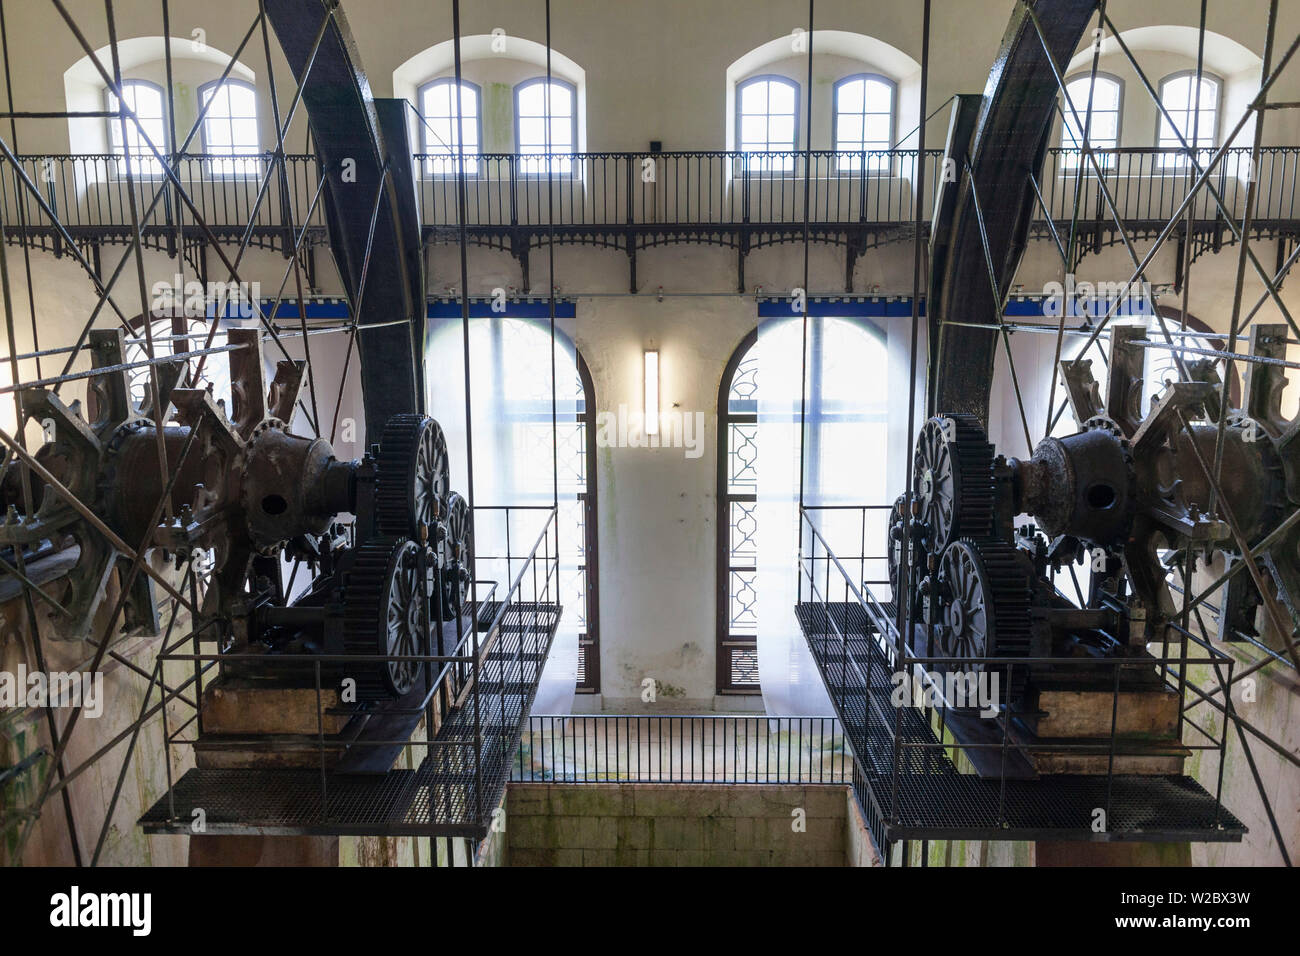 Germany, Bavaria, Bad Reichenhall, Alte Saline, old saltworks, interior, brine pumping wheels Stock Photo